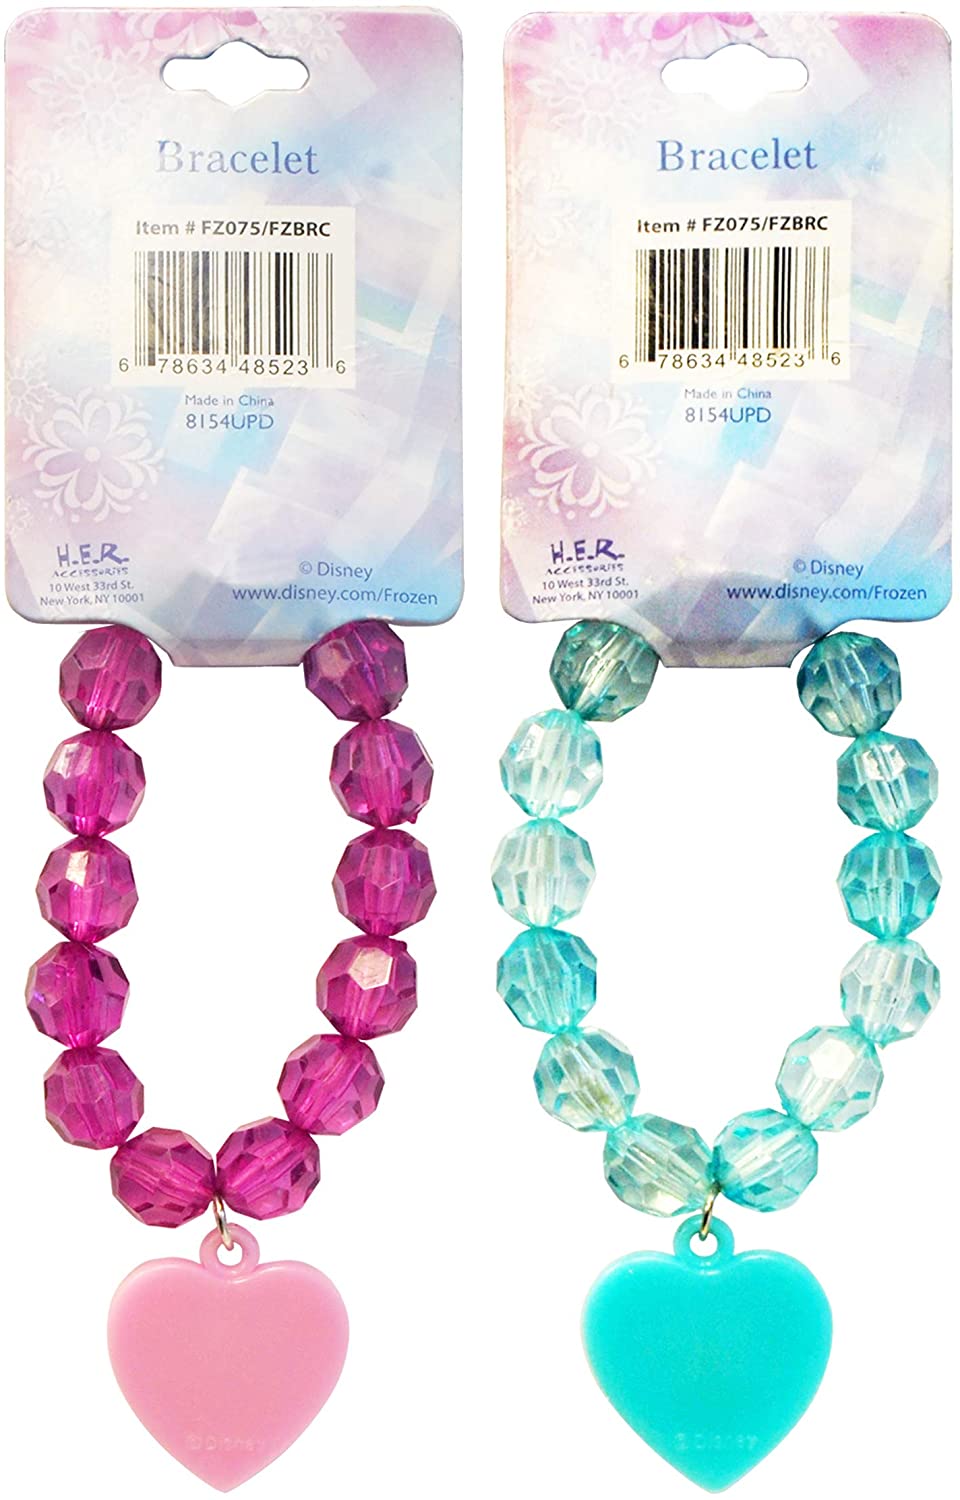 Faceted Beaded Bracelet with Plastic Charm Feature: Minnie Mouse, Disney Frozen, L.O.L Surprise (1Pcs)